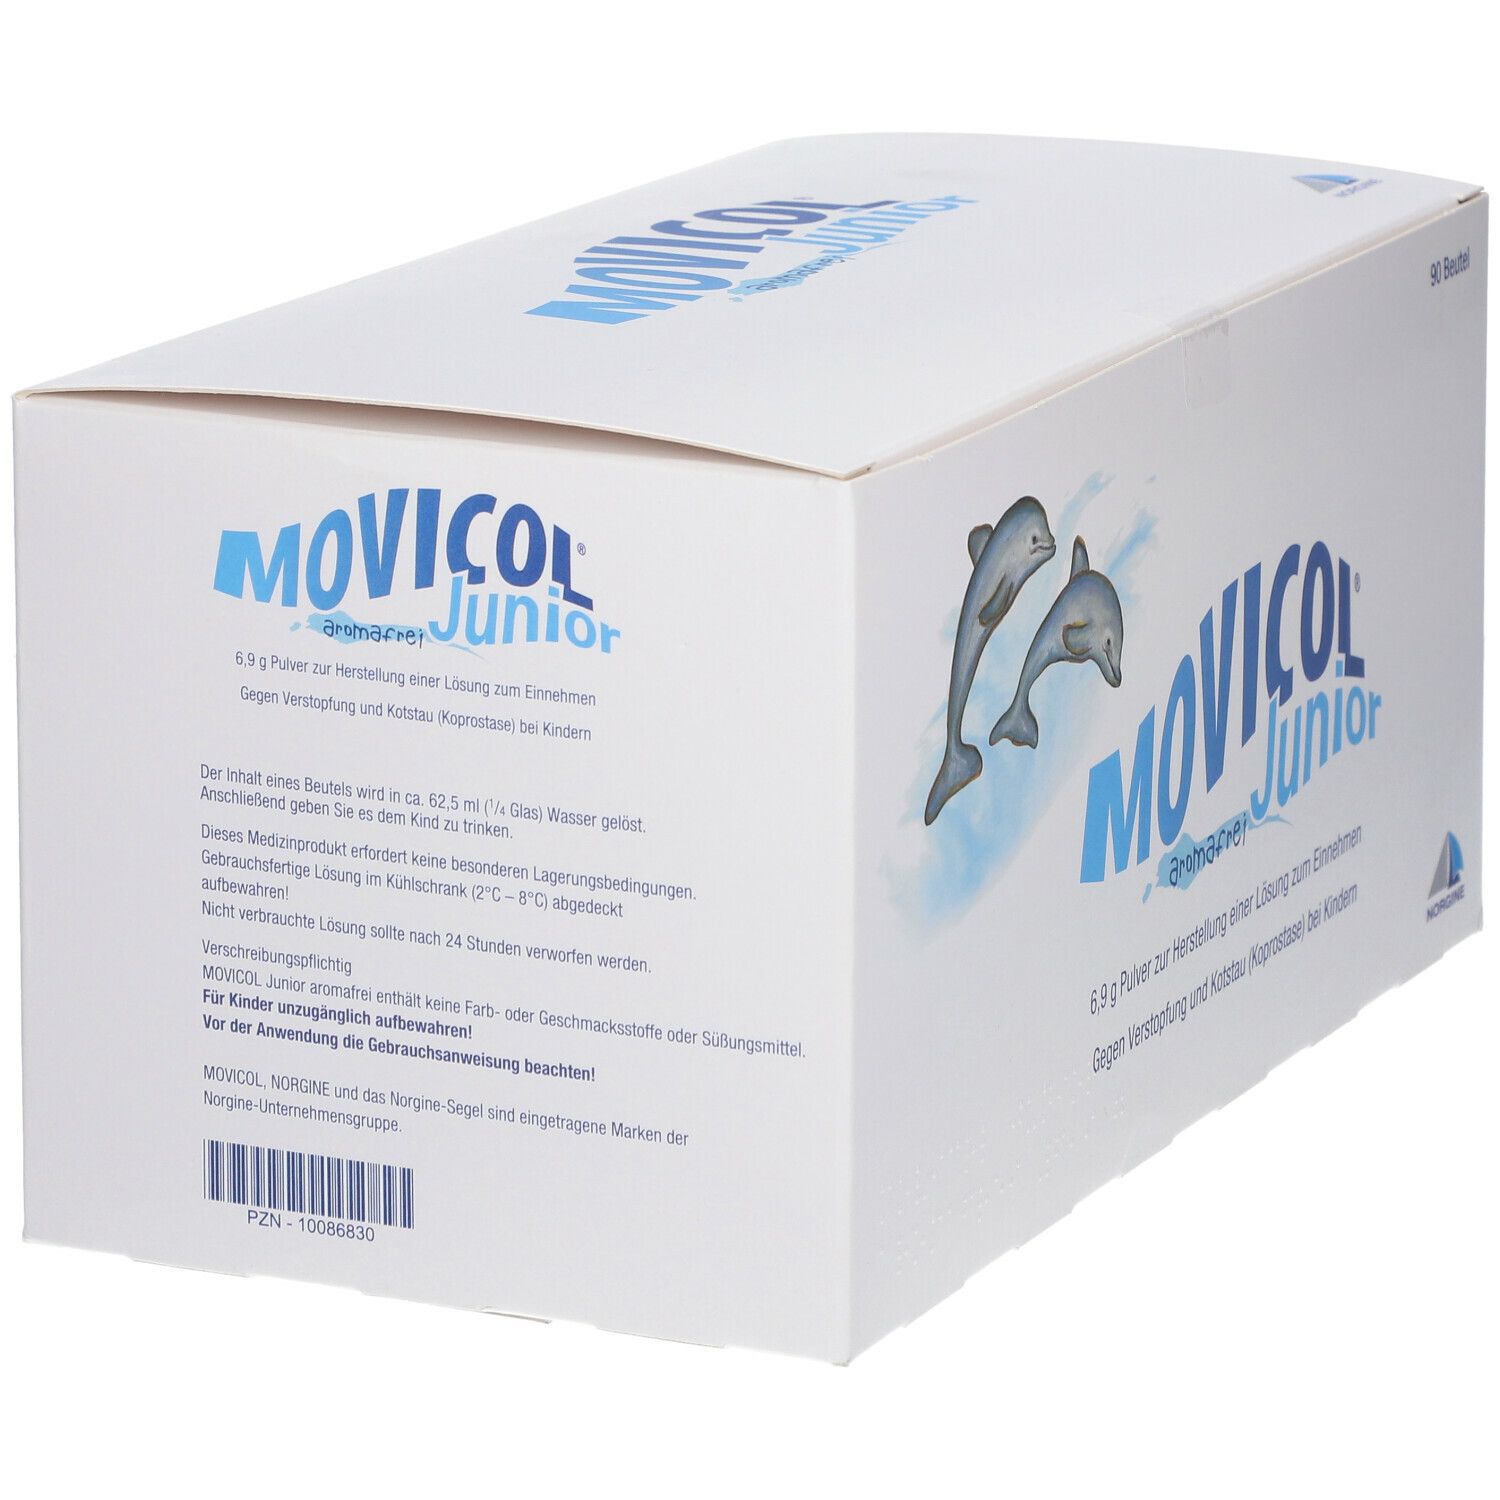 MOVICOL® Junior aromafrei